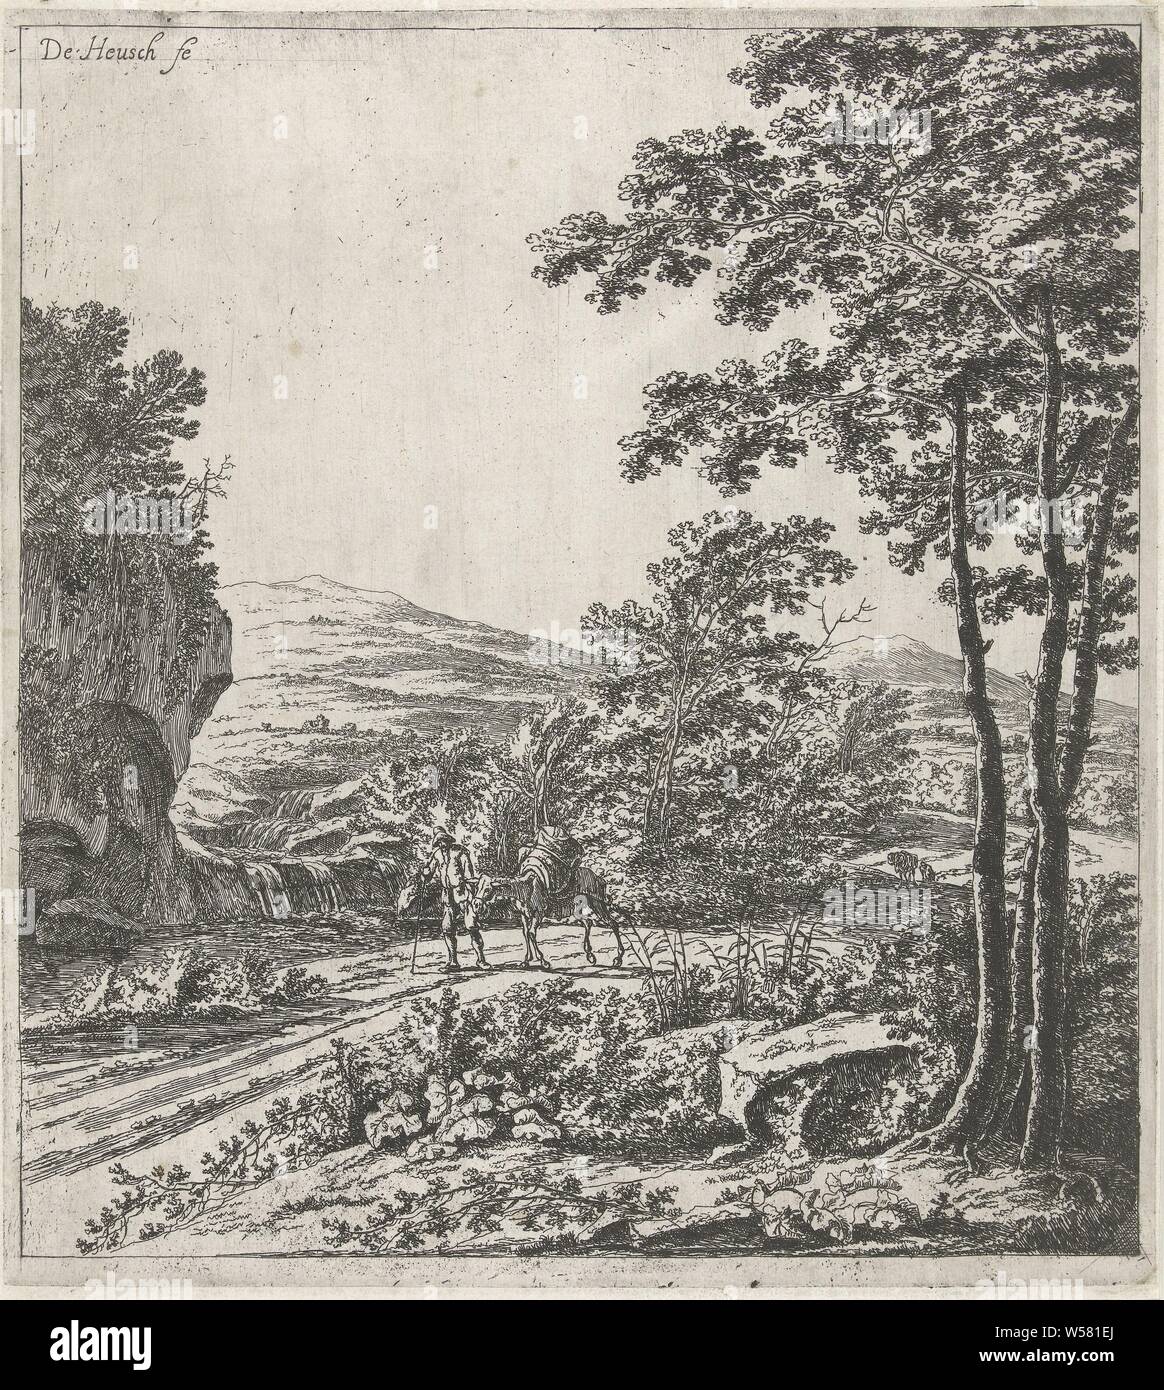 Landschaft mit einem maultier Treiber Lanschappen (Titel der Serie), Maultier, Willem de Heusch (auf Objekt erwähnt), Utrecht, C. 1635-1692, Papier, Ätzen, H 260 mm x B 237 mm Stockfoto